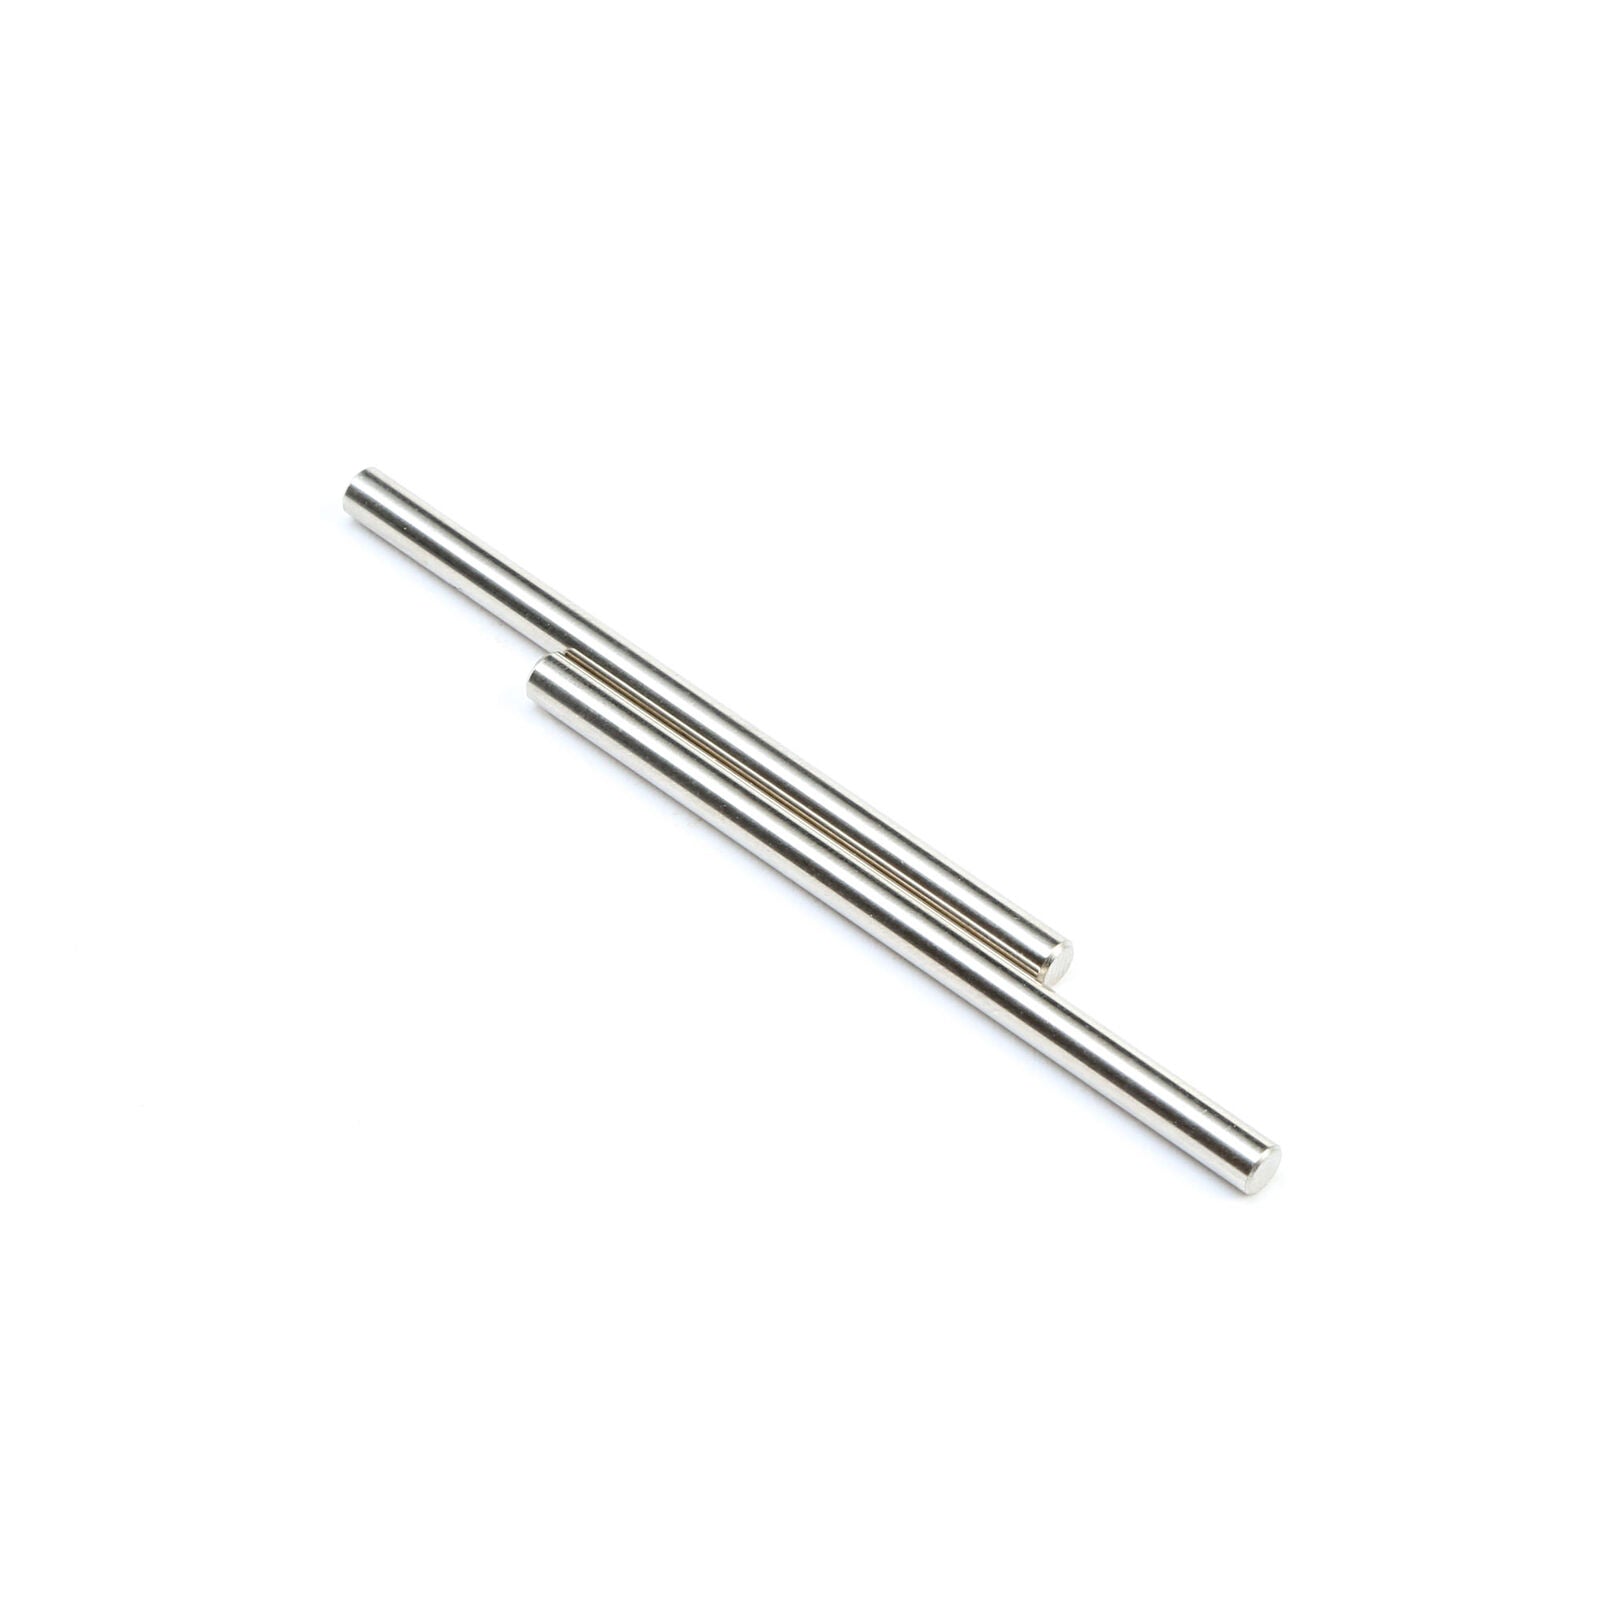 LOSI TLR244043 Hinge Pins, 4 x 66mm, Electro Nickel (2): 8X